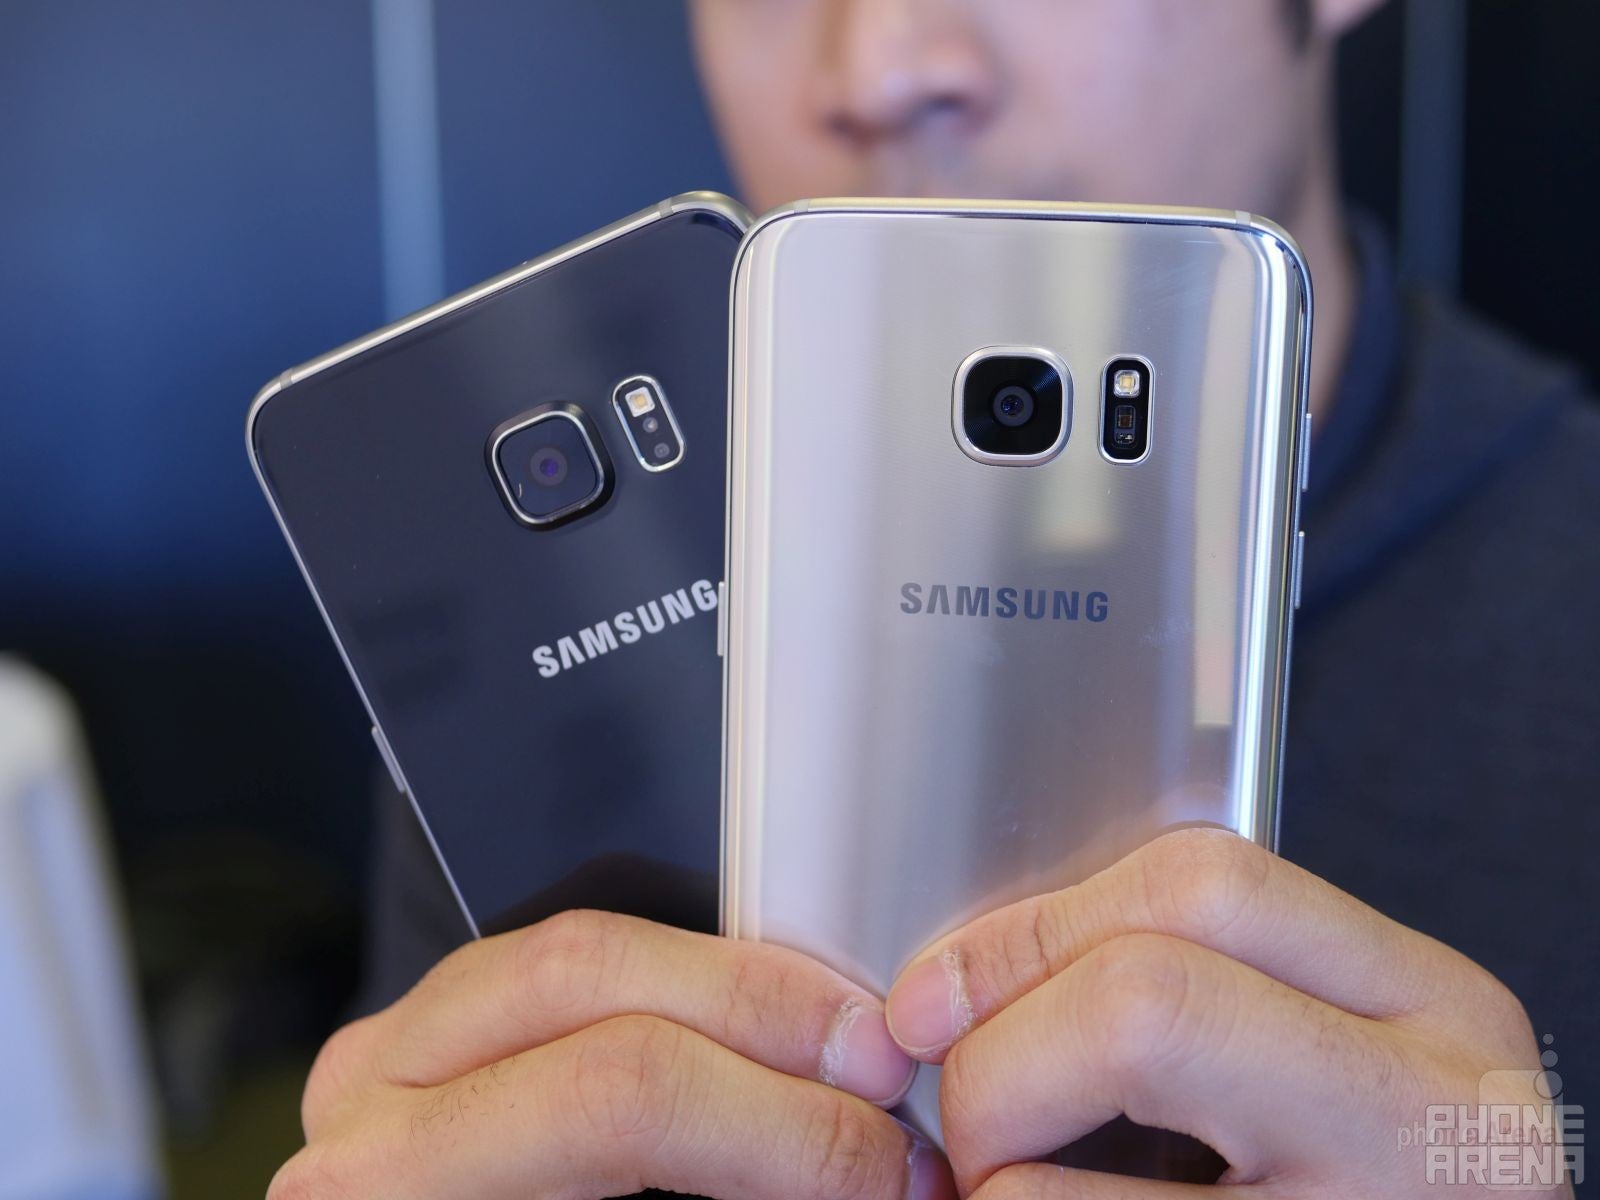 Samsung Galaxy S7 edge vs Samsung Galaxy S6 edge vs Samsung Galaxy S6 edge+: first look